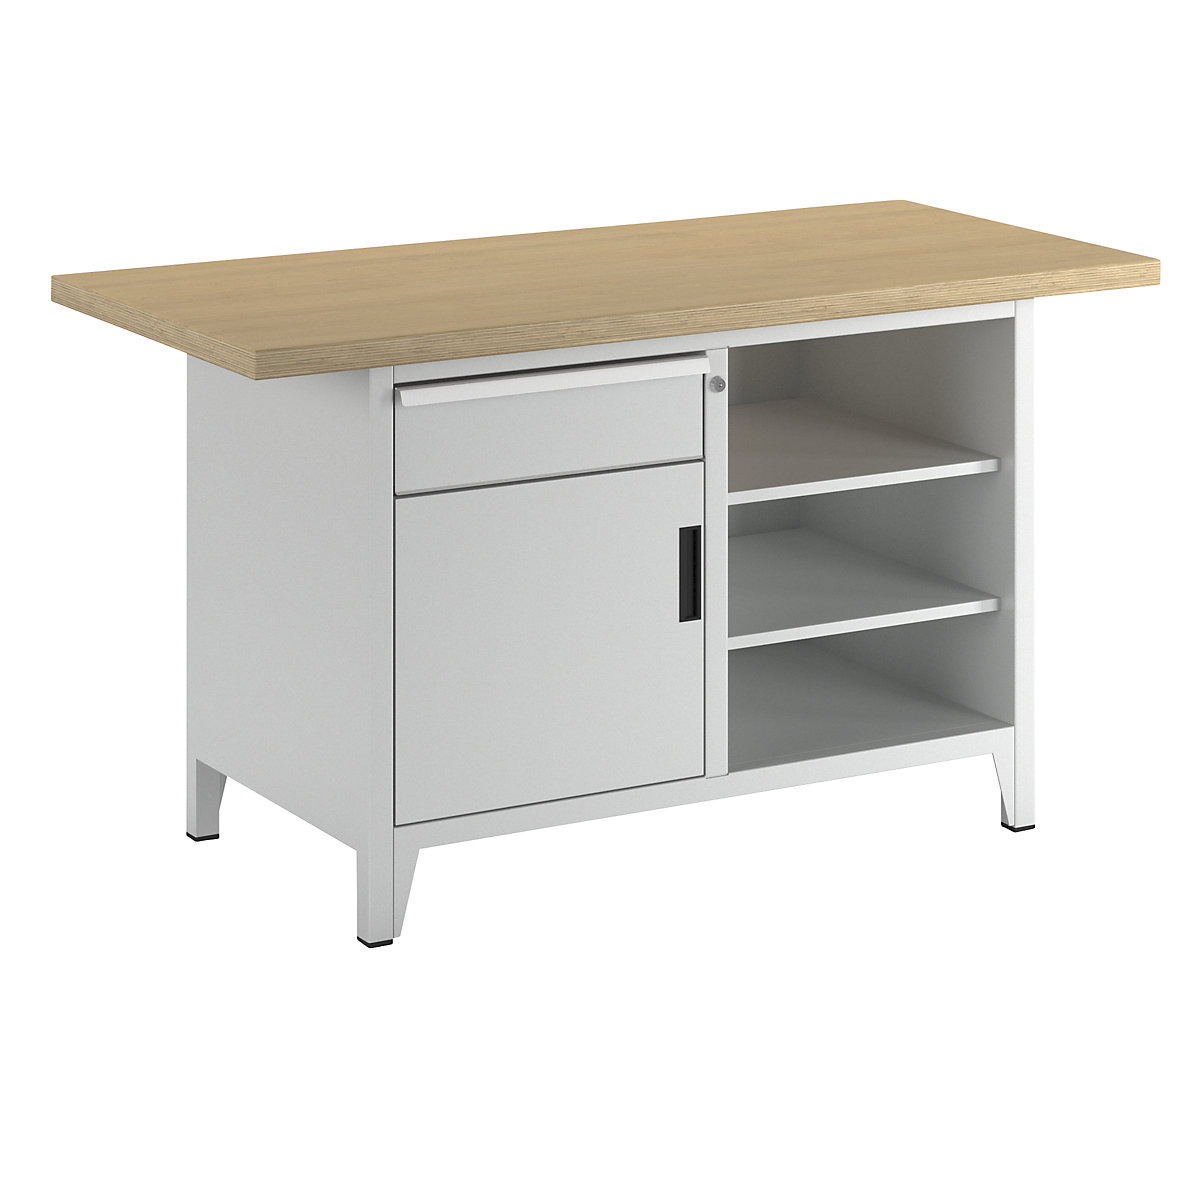 Stół warsztatowy, szerokość 1500 mm, konstrukcja ramowa – LISTA, 3 półki, 1 szuflada, 1 drzwi, korpus jasnoszary, front jasnoszary-2